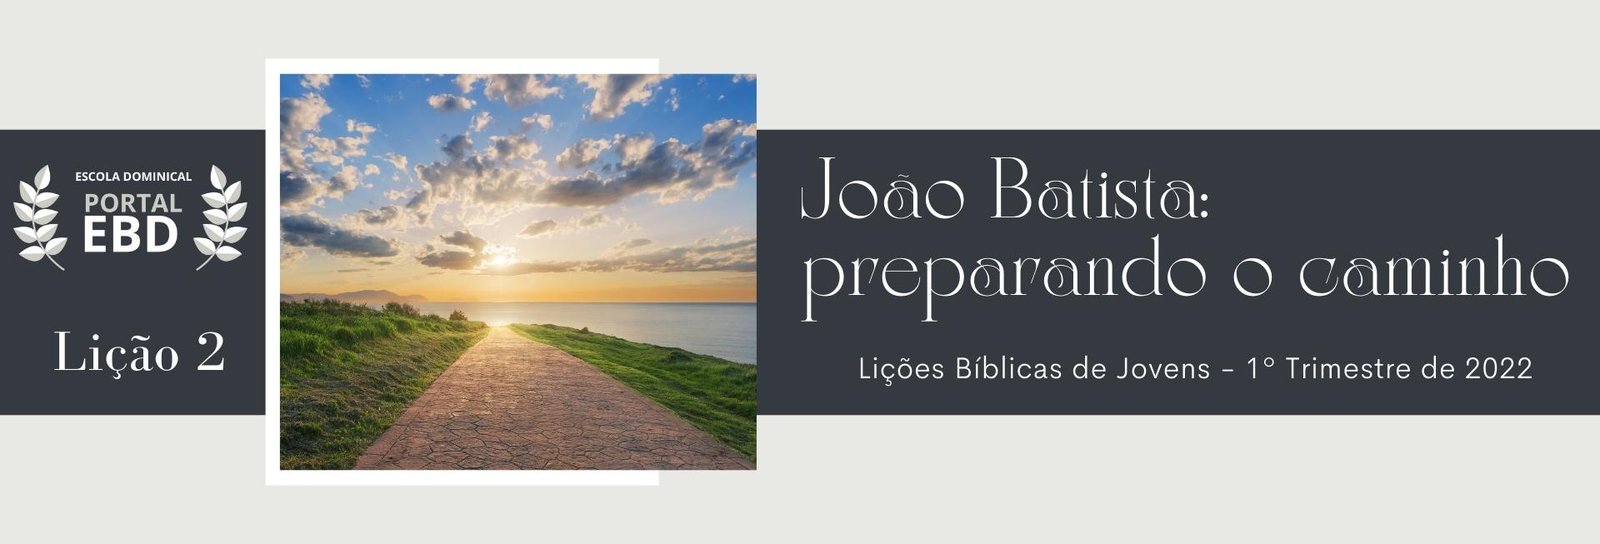 Lição 2 - João Batista: preparando o caminho I